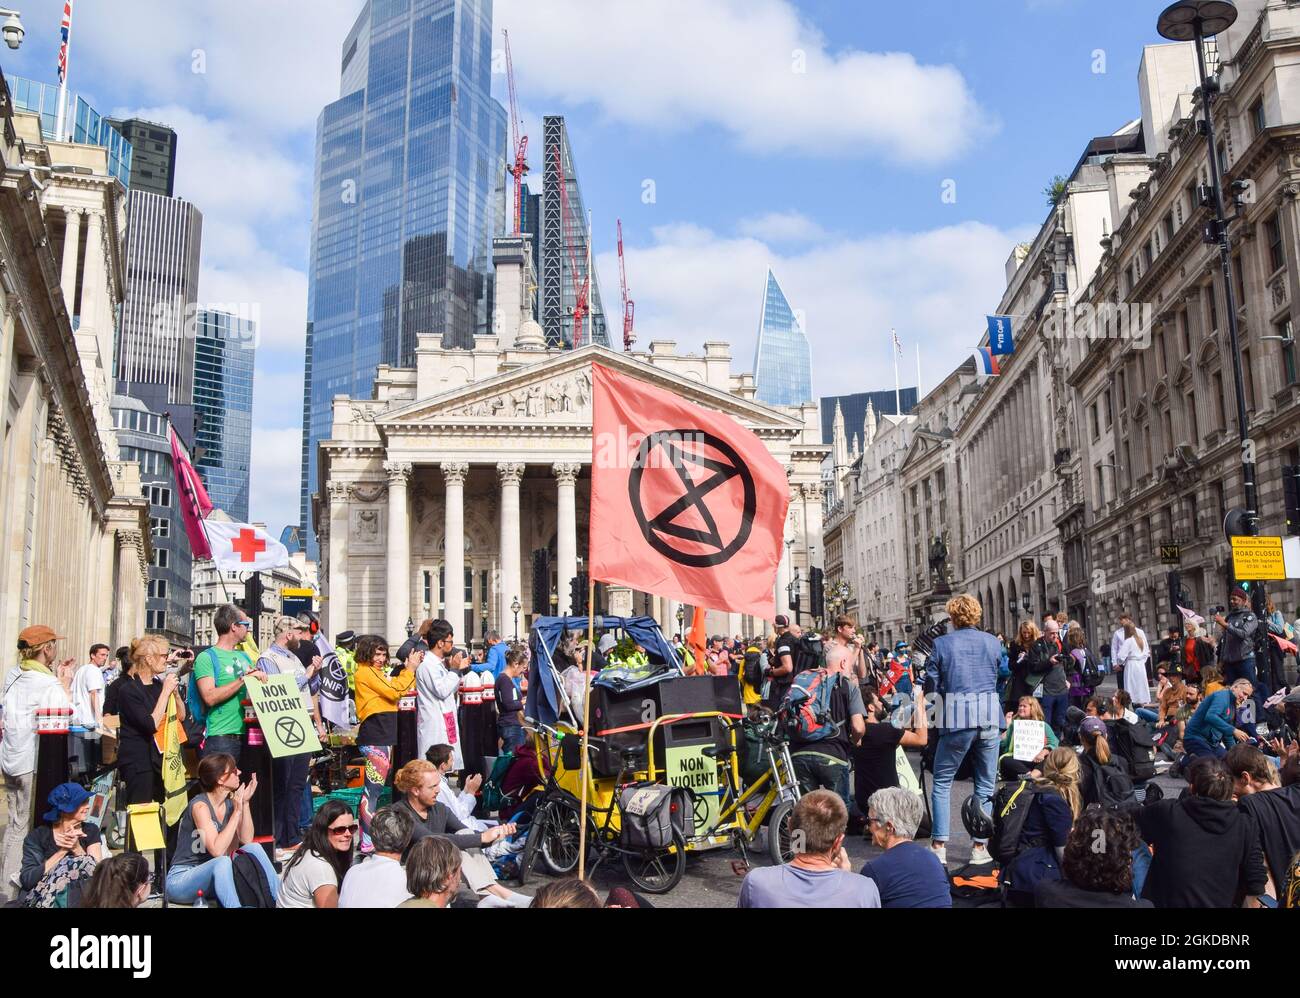 London, Großbritannien. September 2021. Extinction Rebellion Demonstranten blockierten die Straßen vor dem Bahnhof Bank und der Bank of England in der City of London, im Rahmen ihrer zweiwöchigen Kampagne „Impossible Rebellion“, die die britische Regierung aufforderte, in der Klima- und Umweltkrise sinnvoll zu handeln. Stockfoto